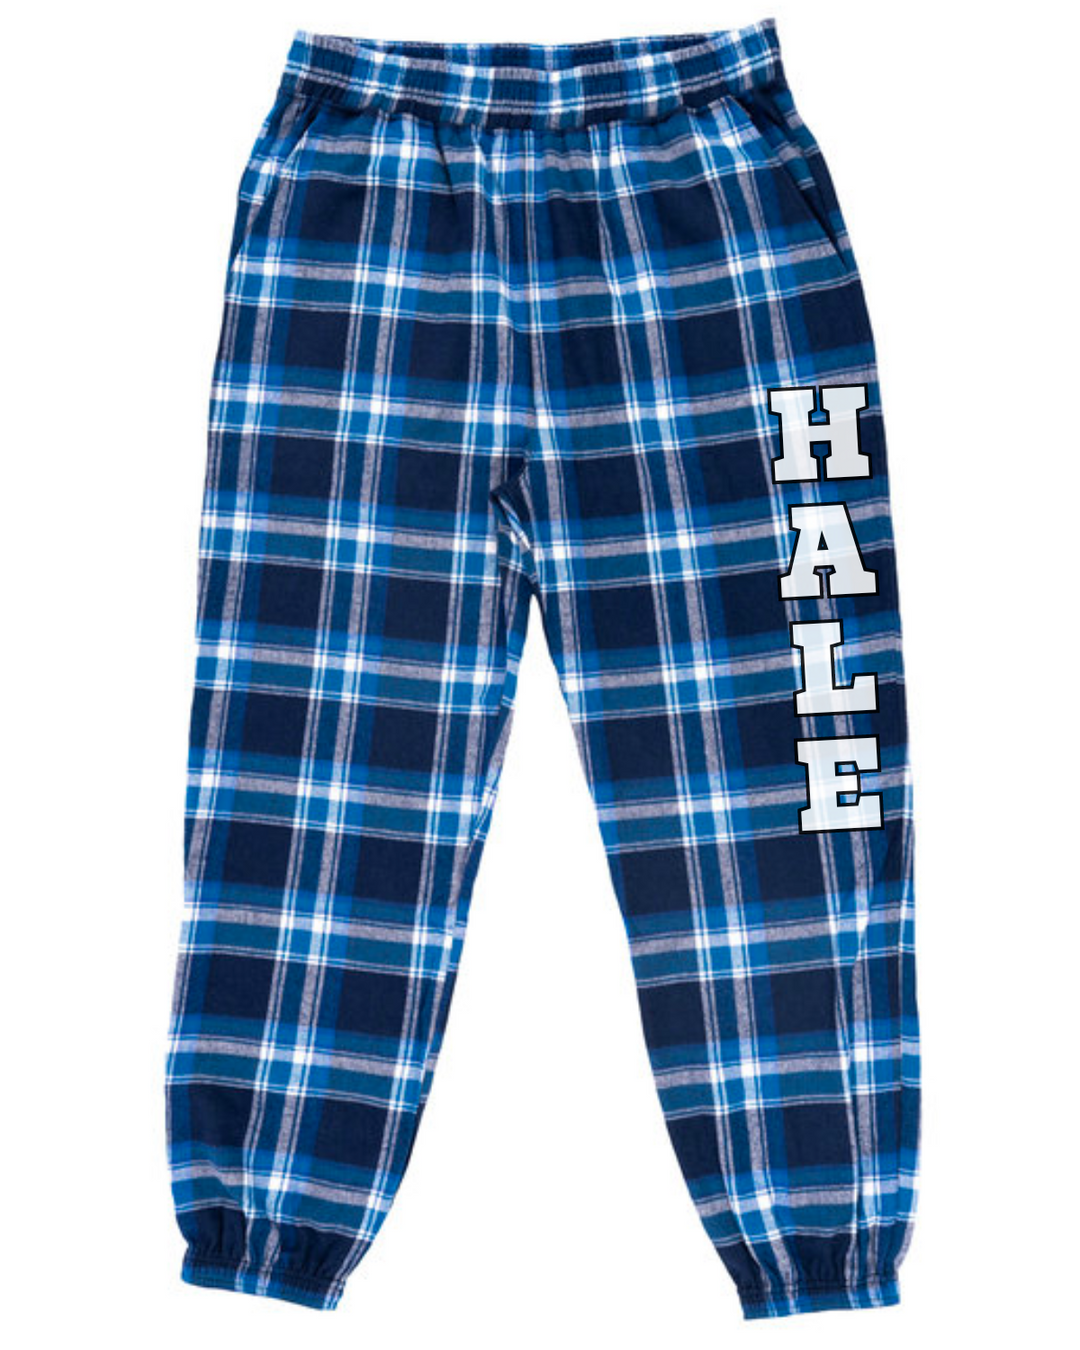 Hale Middle School Burnside Adult Unisex Flannel Pajama pants (B8810)